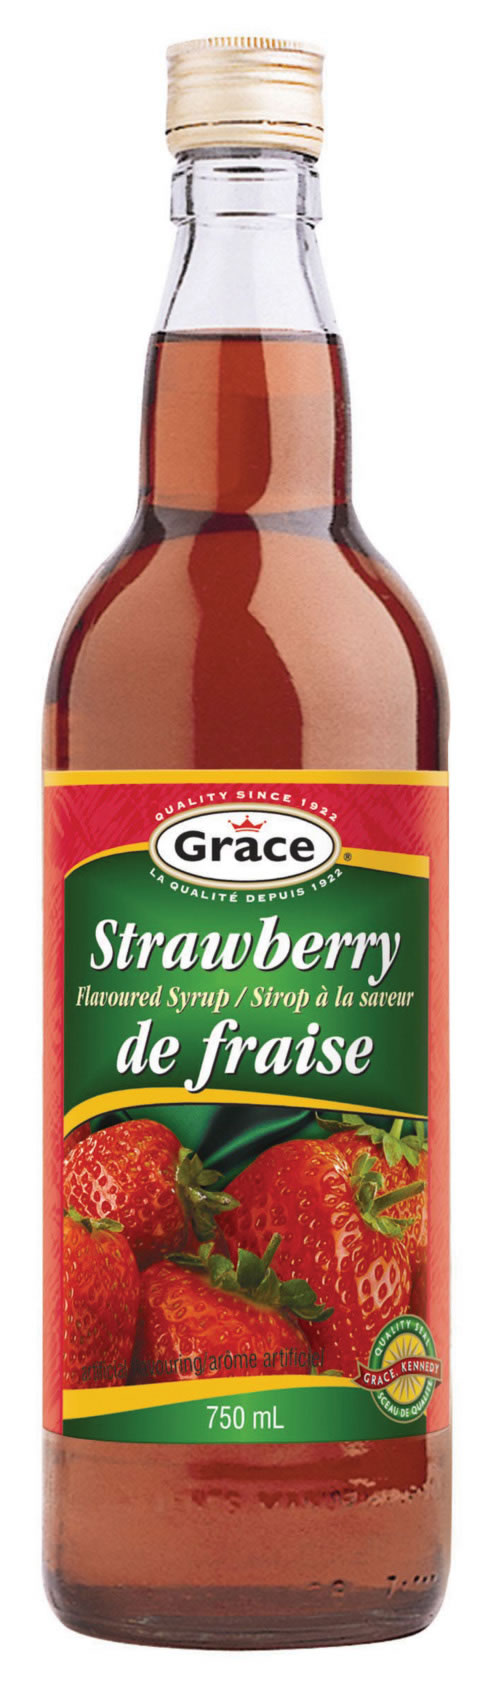 grace syrup strawberry